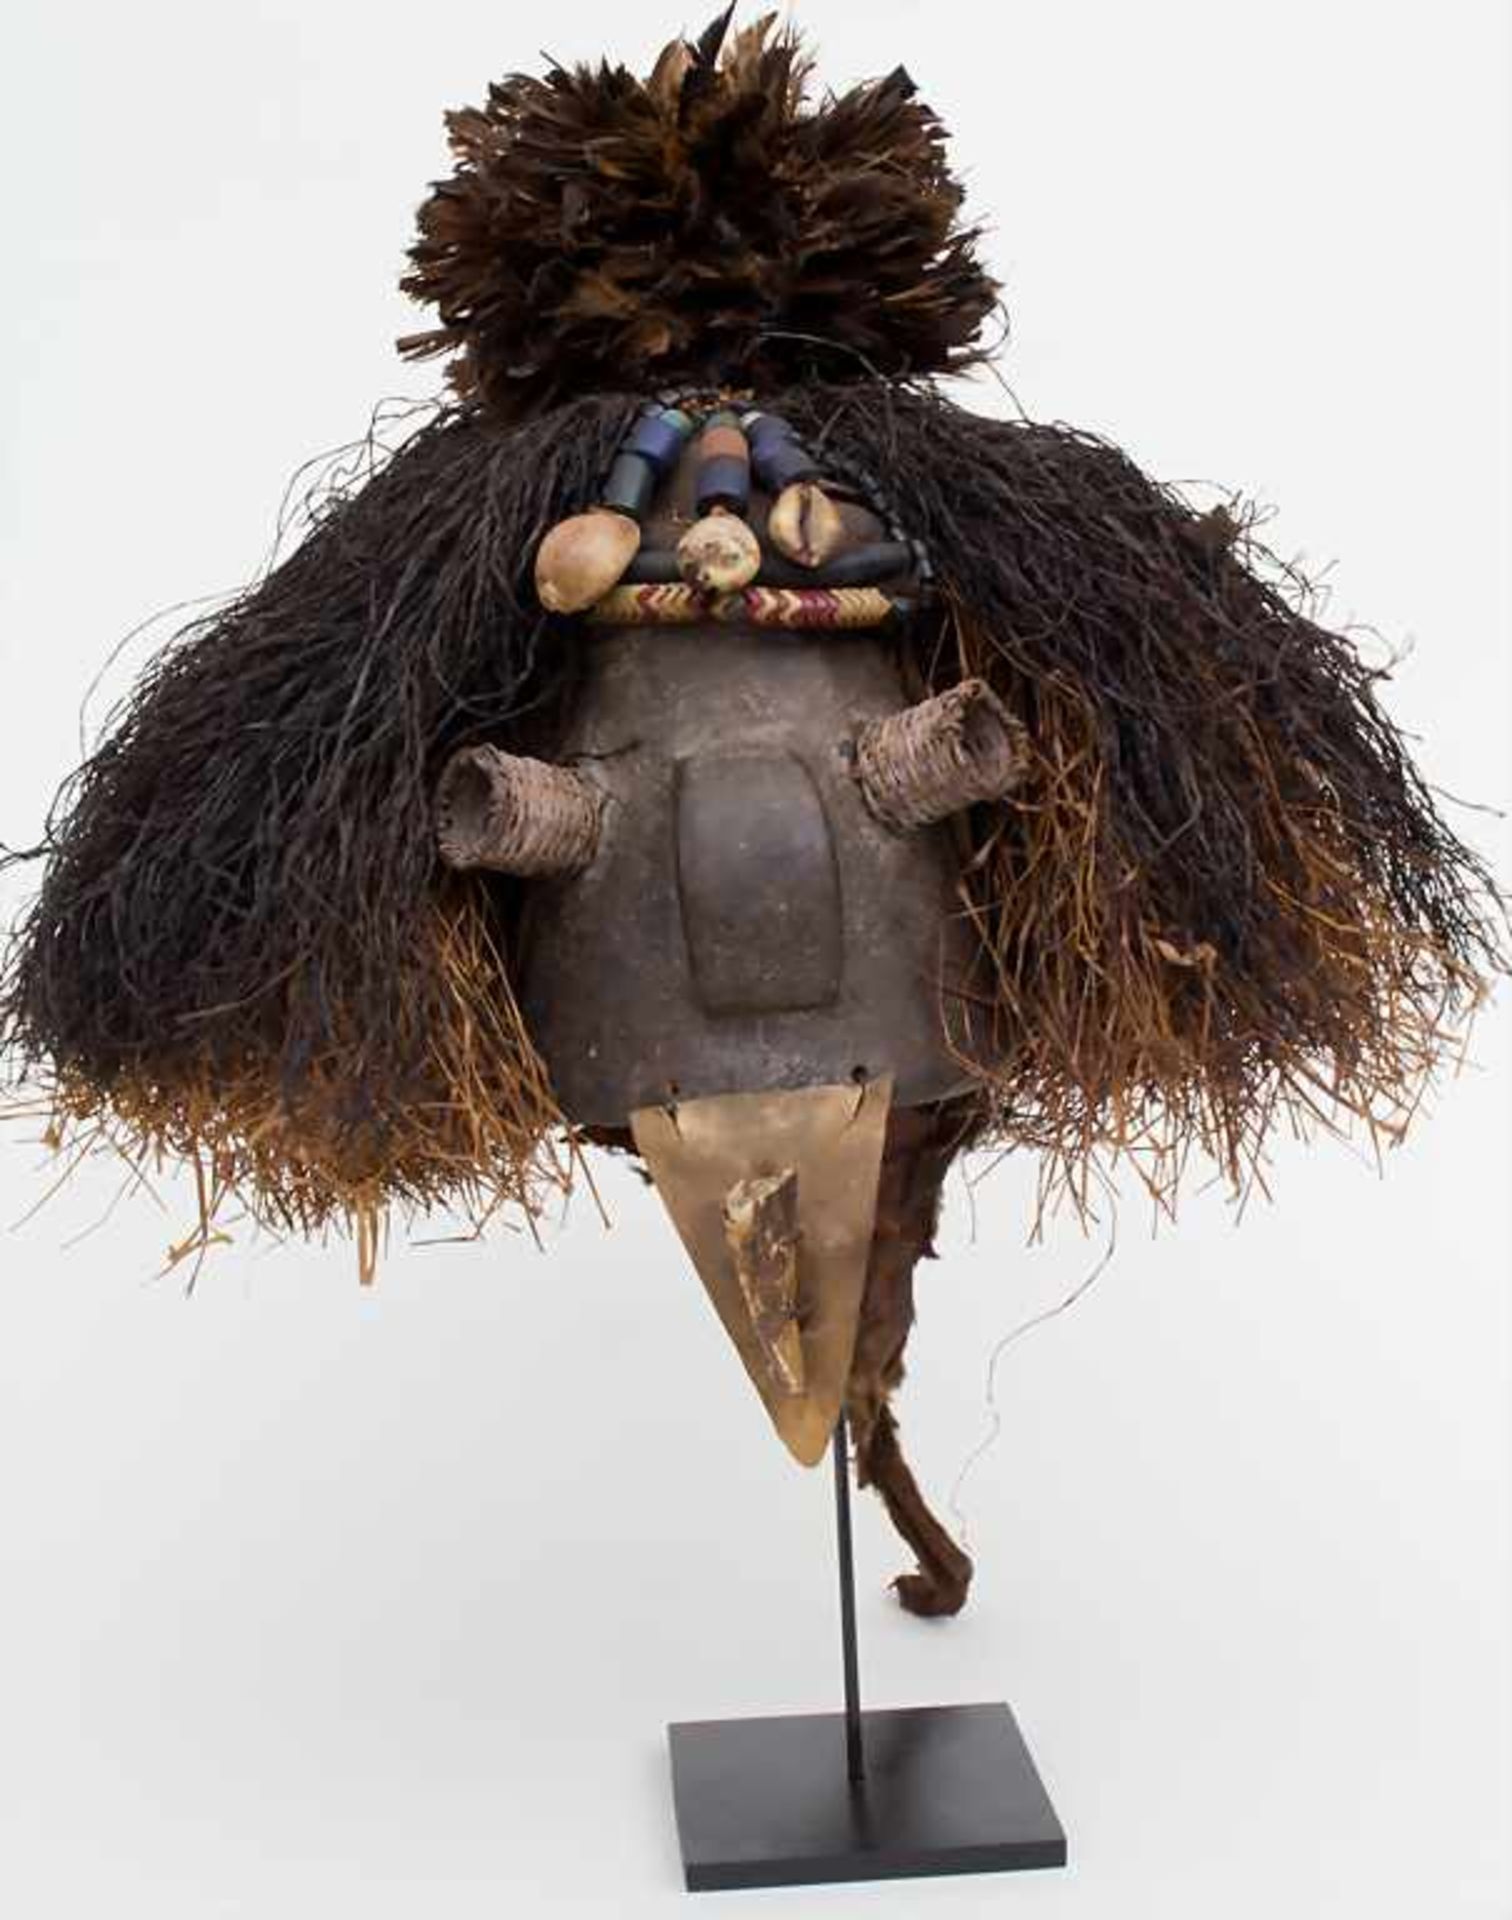 Aufsatzmaske / A mask, Pende, KongoMaterial: Holz, dunkelbraune Patina, Gräser, Schnabel eines